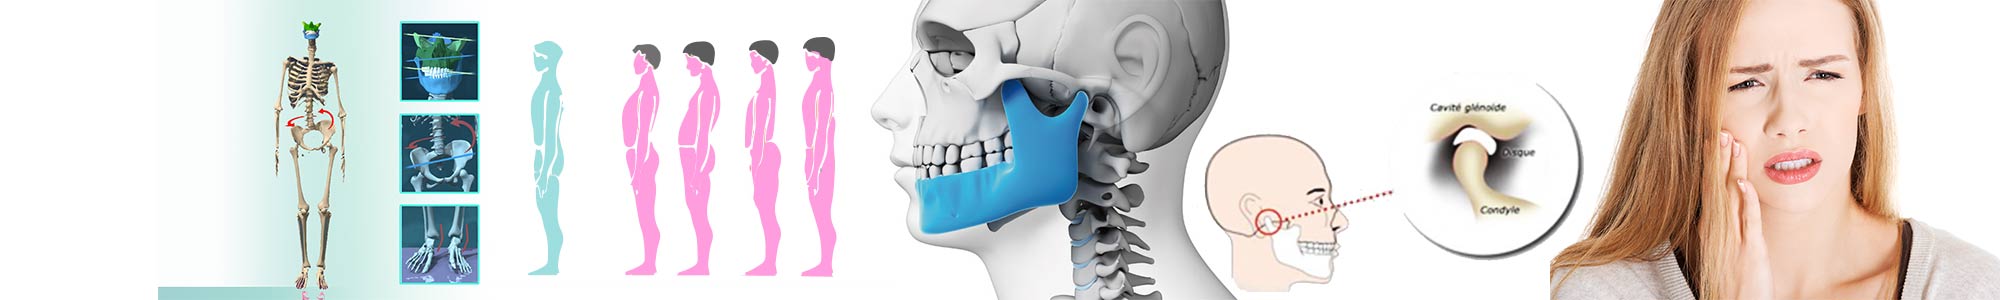 Occlusodontie - Polyclinique dentaire Européenne Tours- Spécialités dentaires à Tours